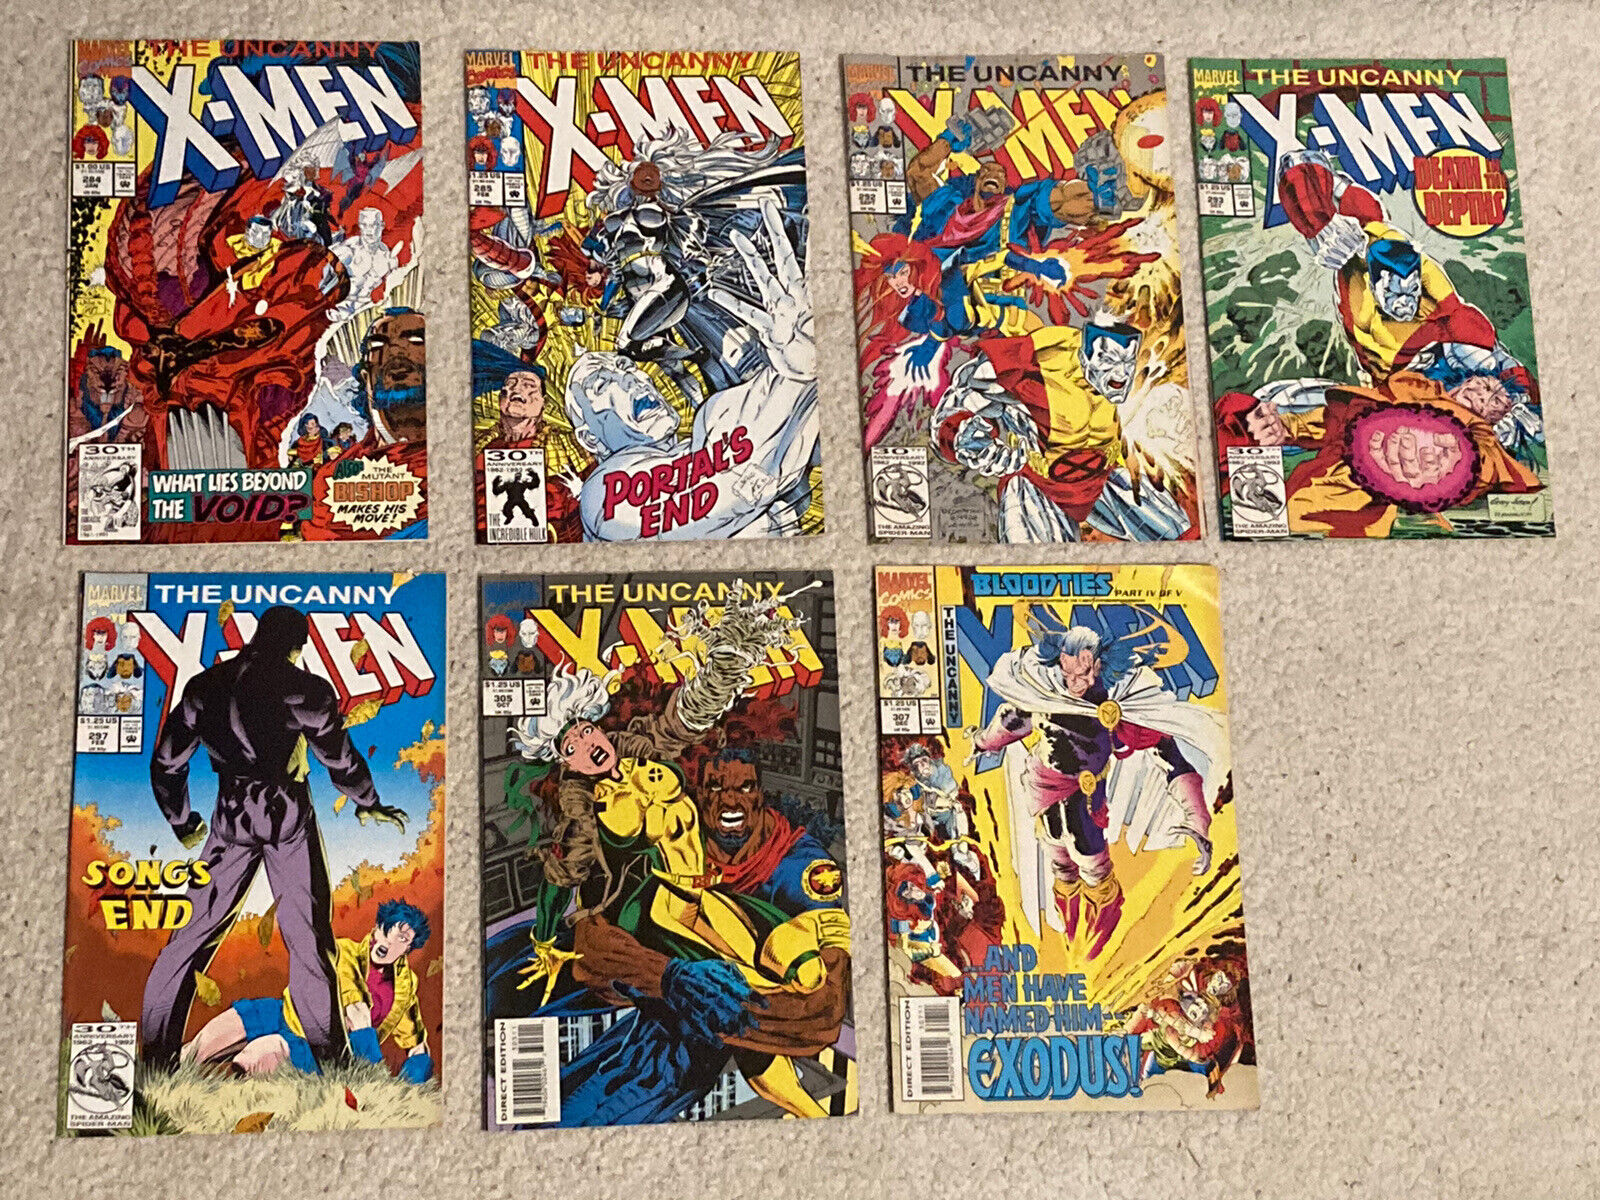 THE UNCANNY X-MEN MARVEL COMICS #284-307 VF+ Lot of 7 Comics 1992-1993 Copper